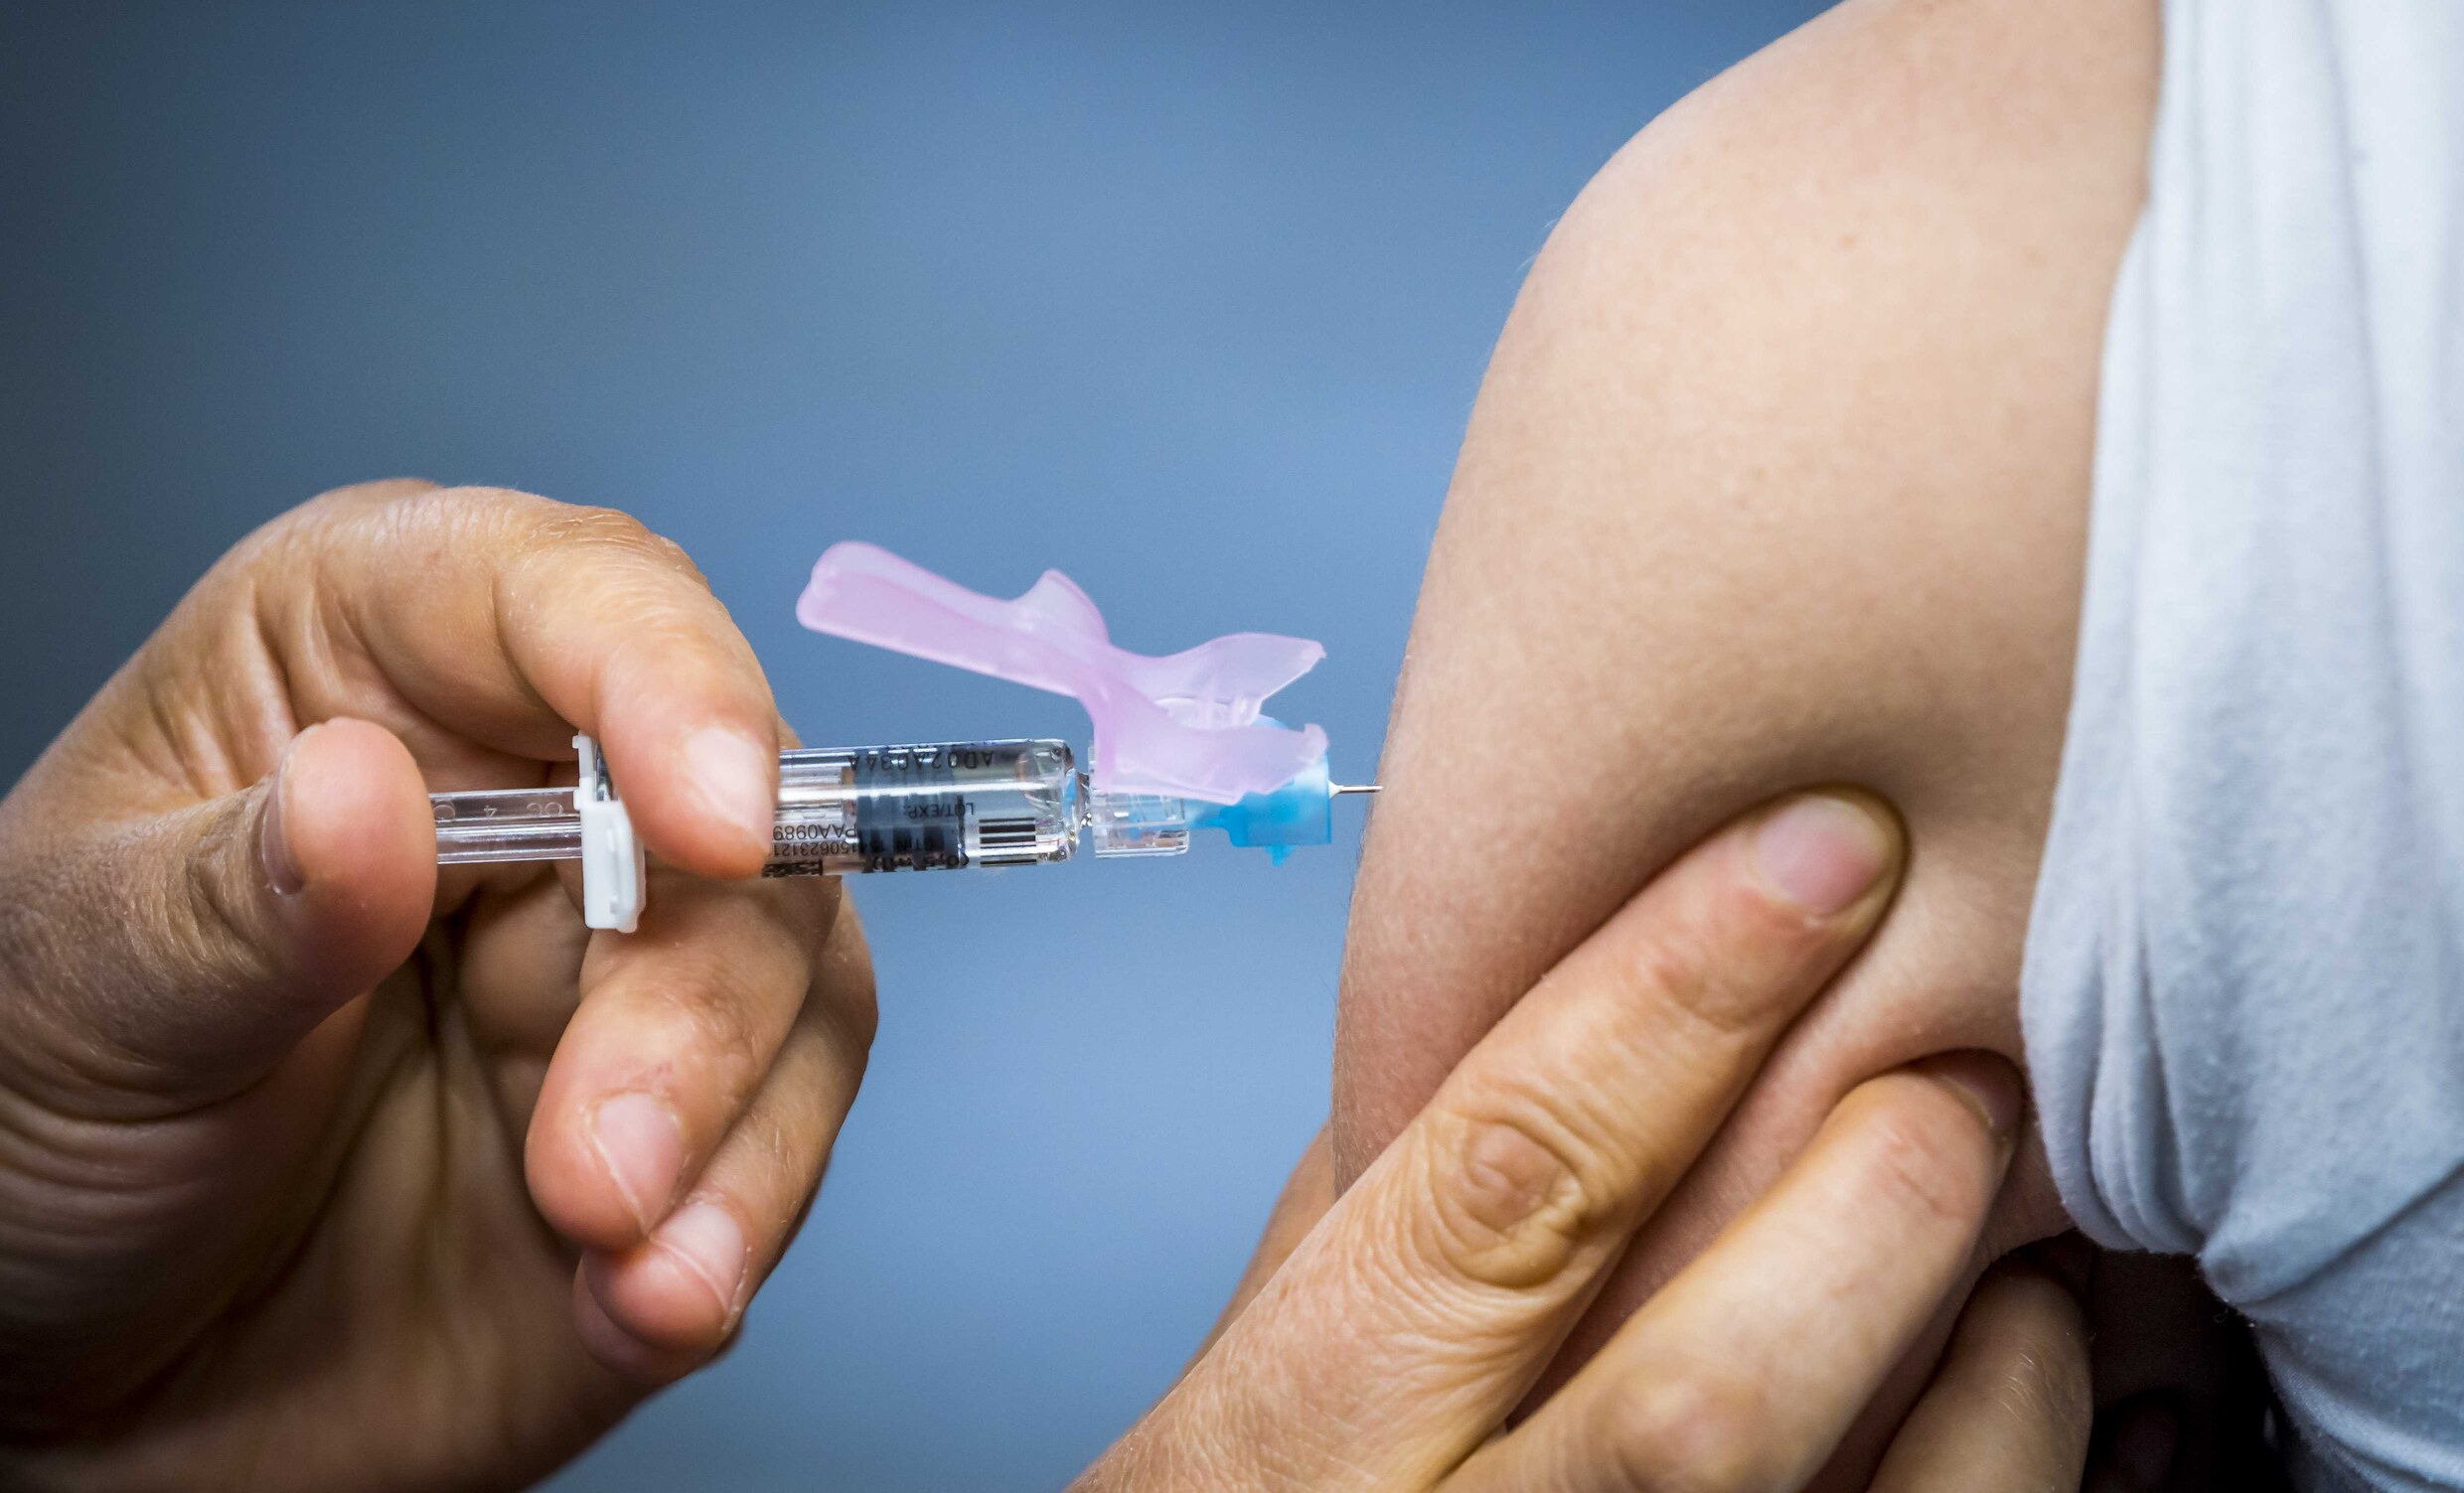 Crisisplan vaccintwijfel in de maak: ‘Aantal gevaccineerden kan plots kelderen’